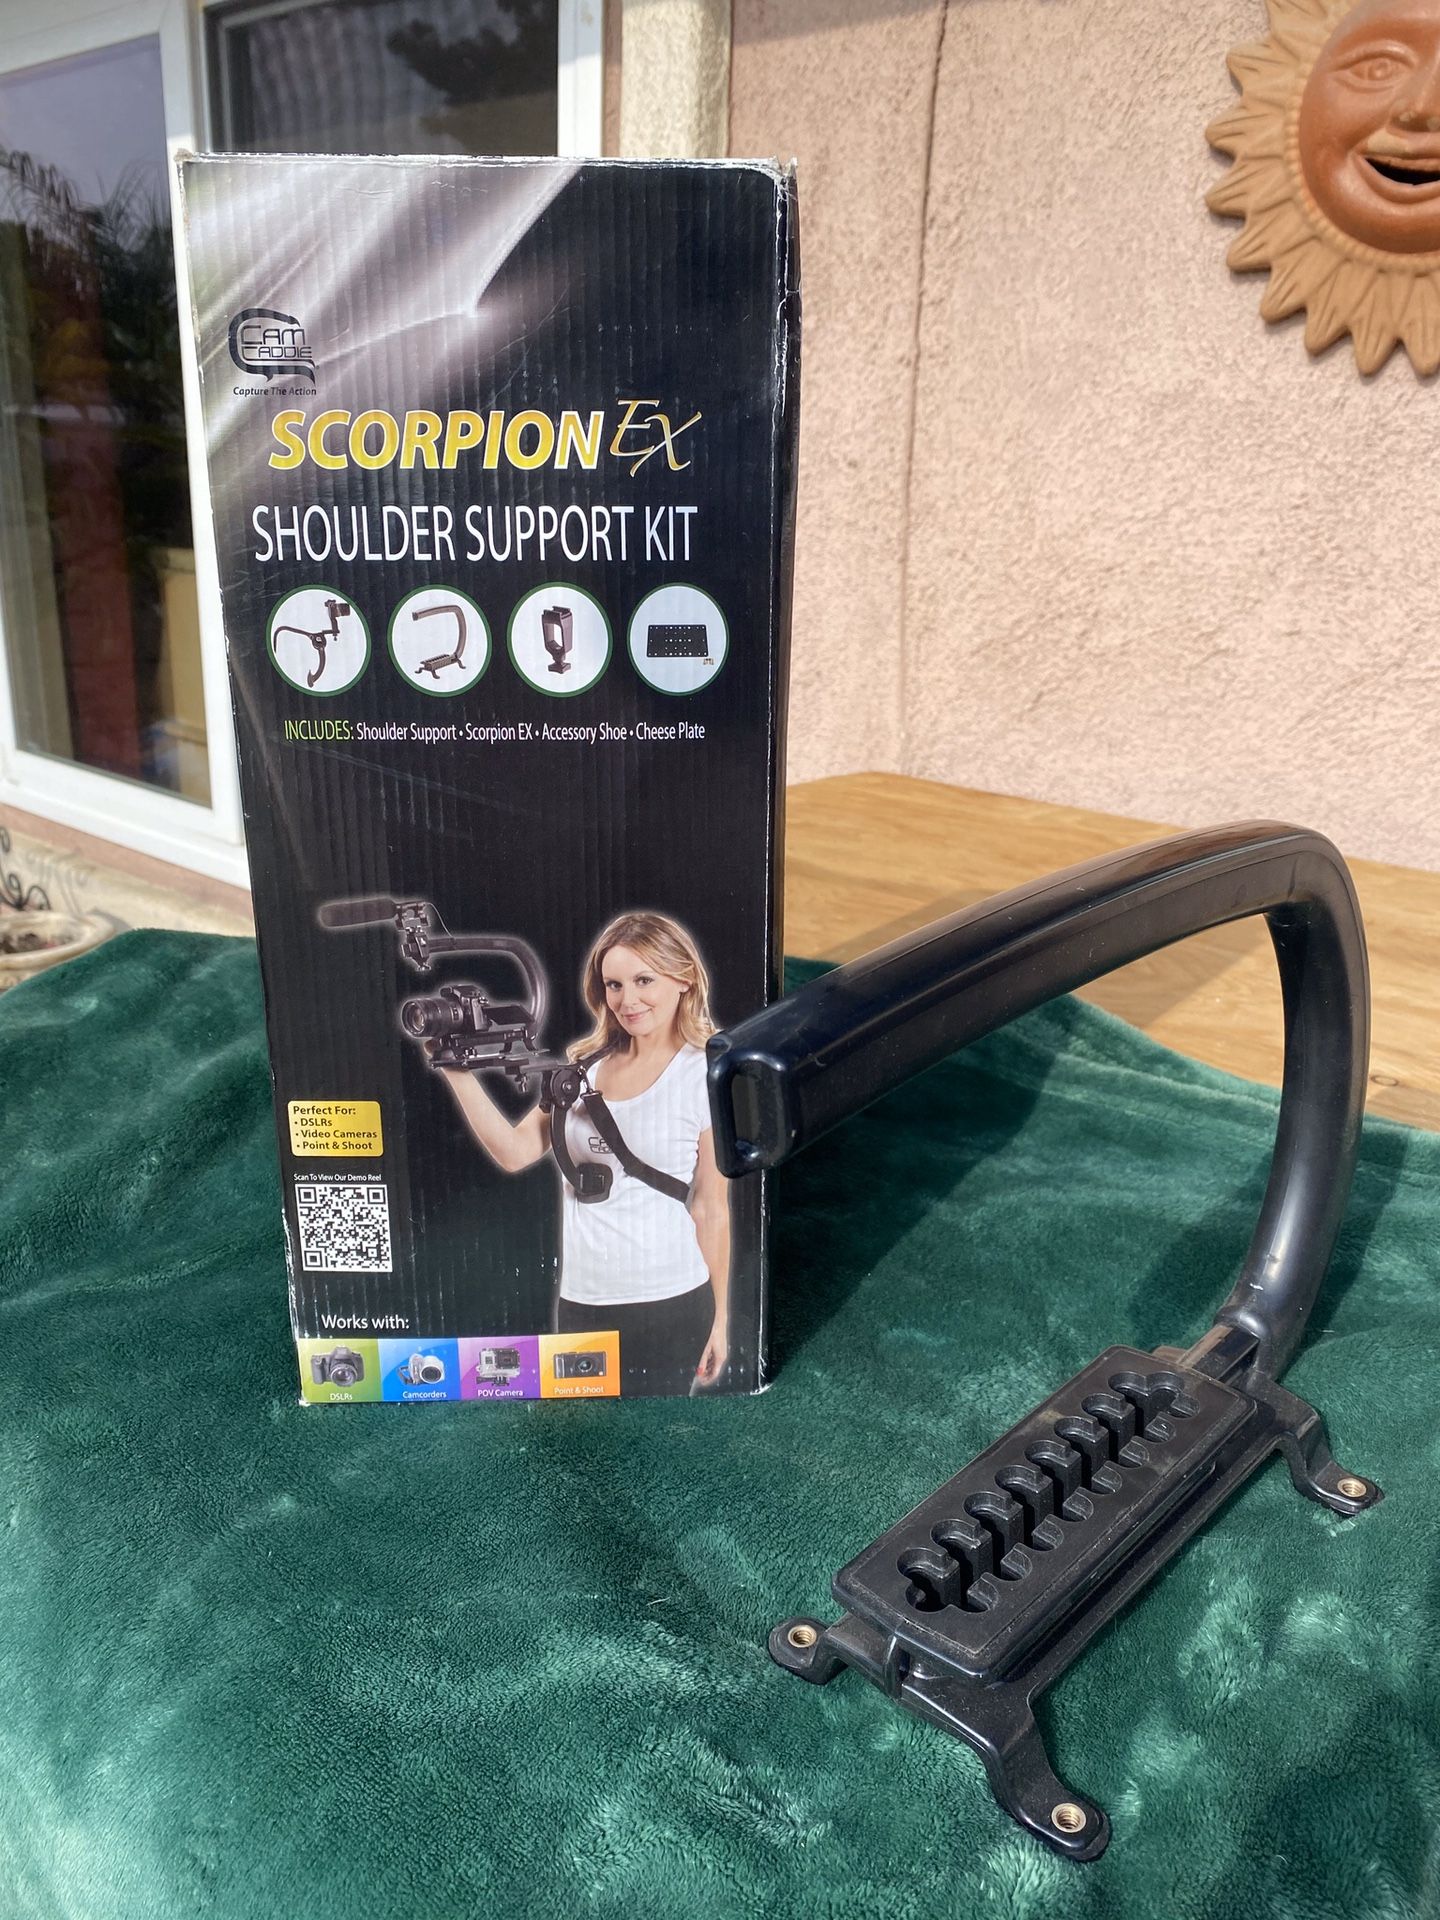 Scorpion shoulder support kit for video cameras, DSLR, smartphones